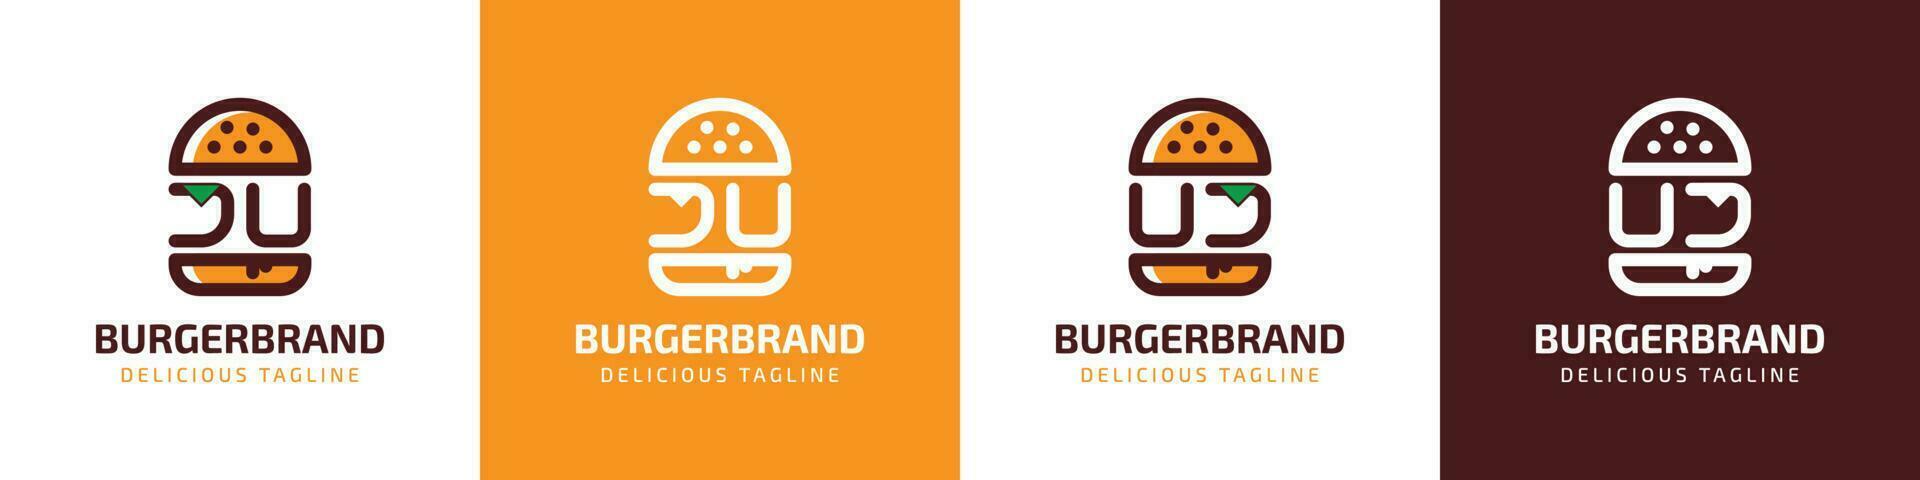 letra ju y uj hamburguesa logo, adecuado para ninguna negocio relacionado a hamburguesa con ju o uj iniciales. vector